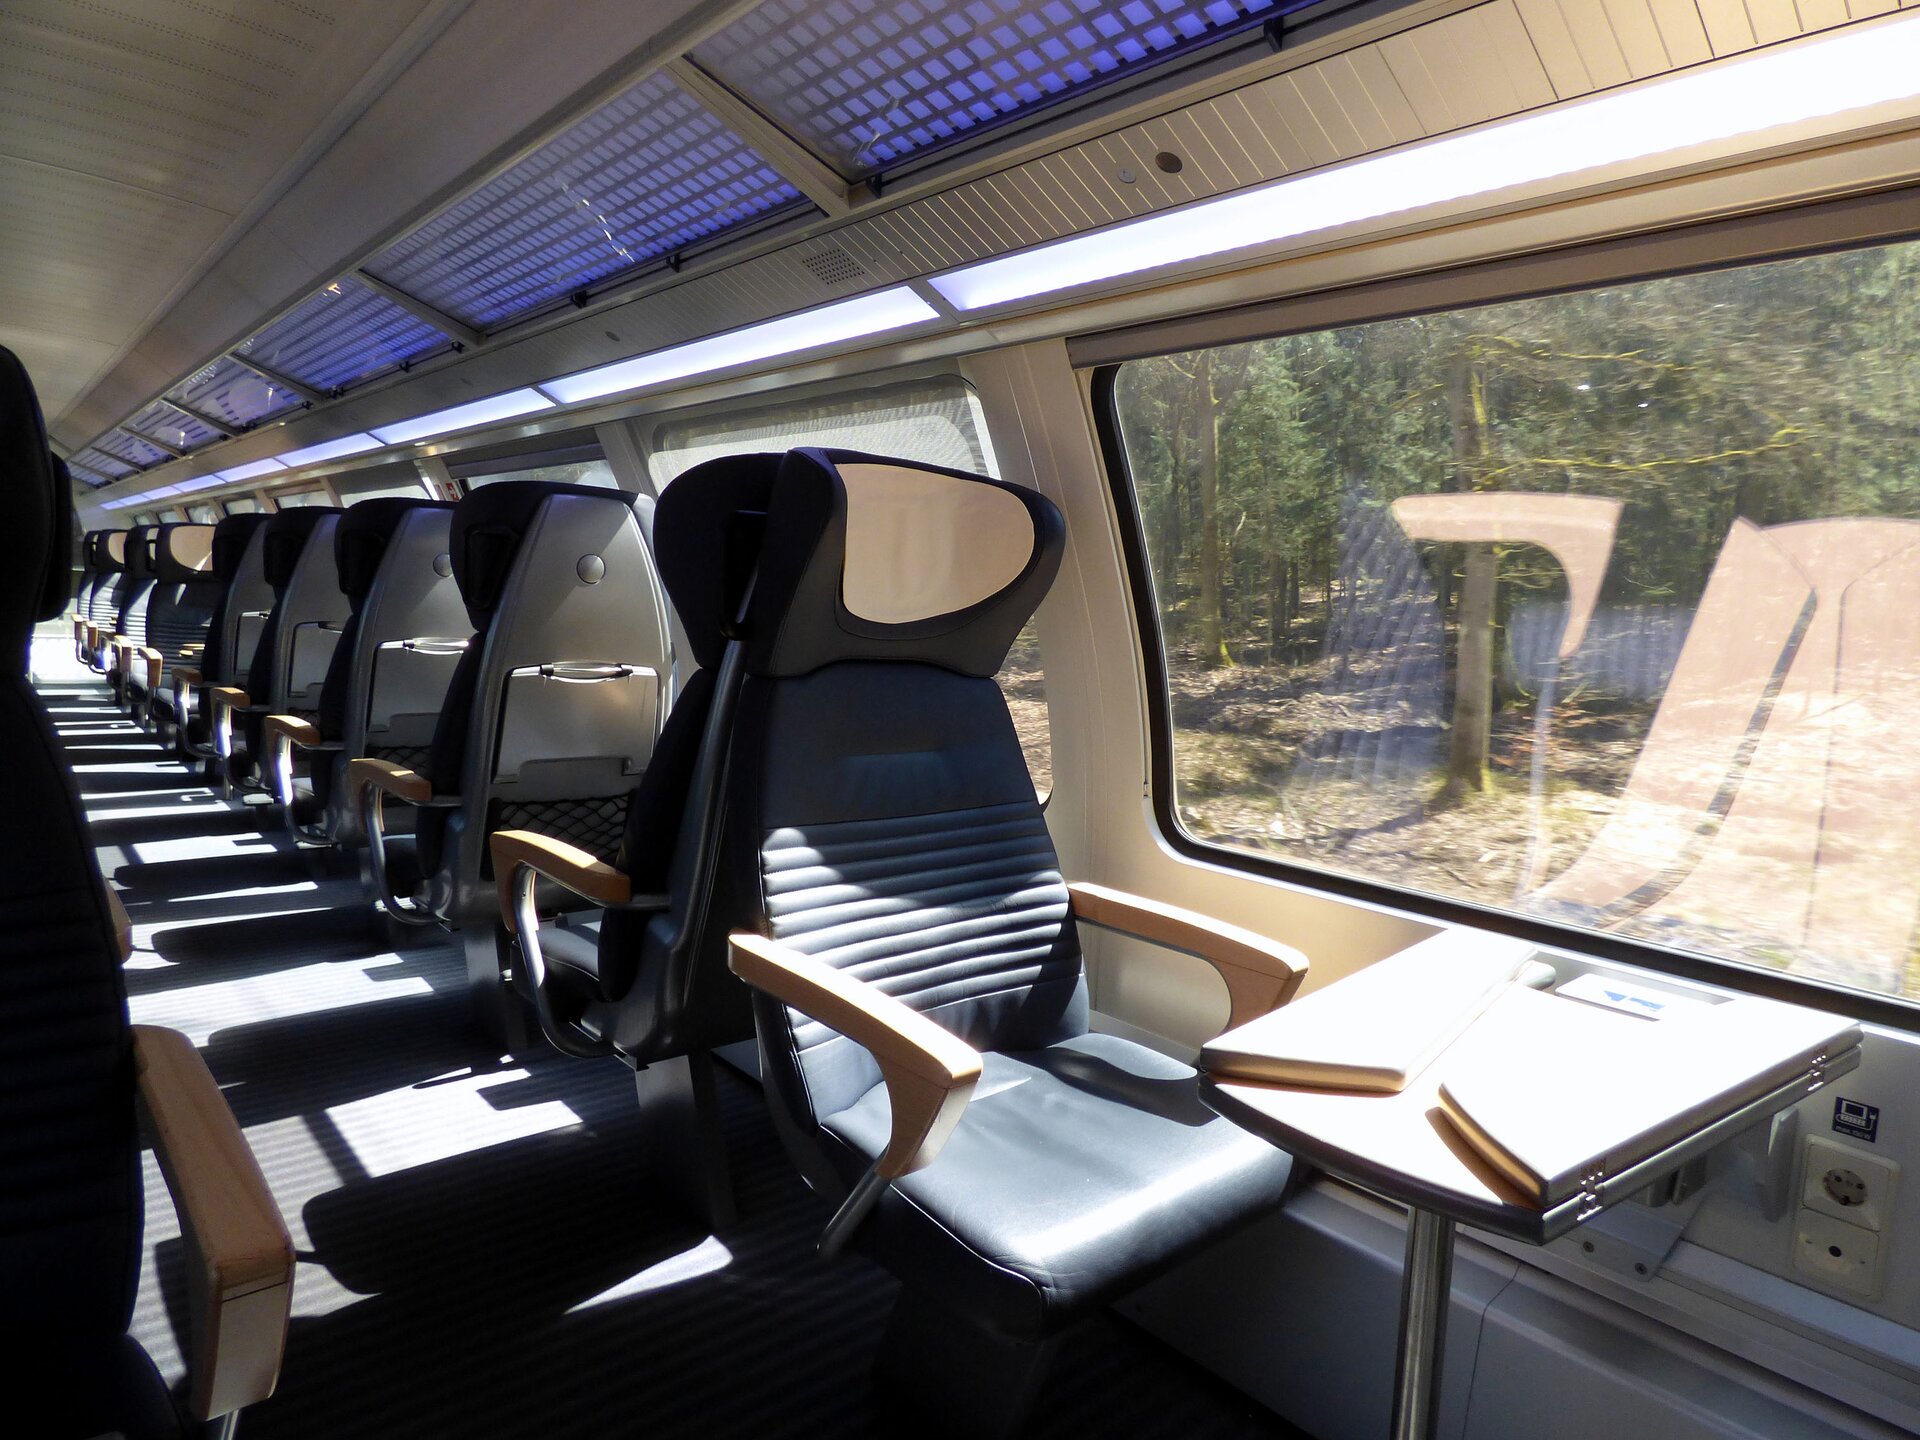 Zdjęcie przedstawia wnętrze wagonu pociągu z rzędem foteli ustawionych jeden za drugim. Nad siedzeniami umieszczona jest półka bagażowa. Widoczne są szerokie okna wagonu.